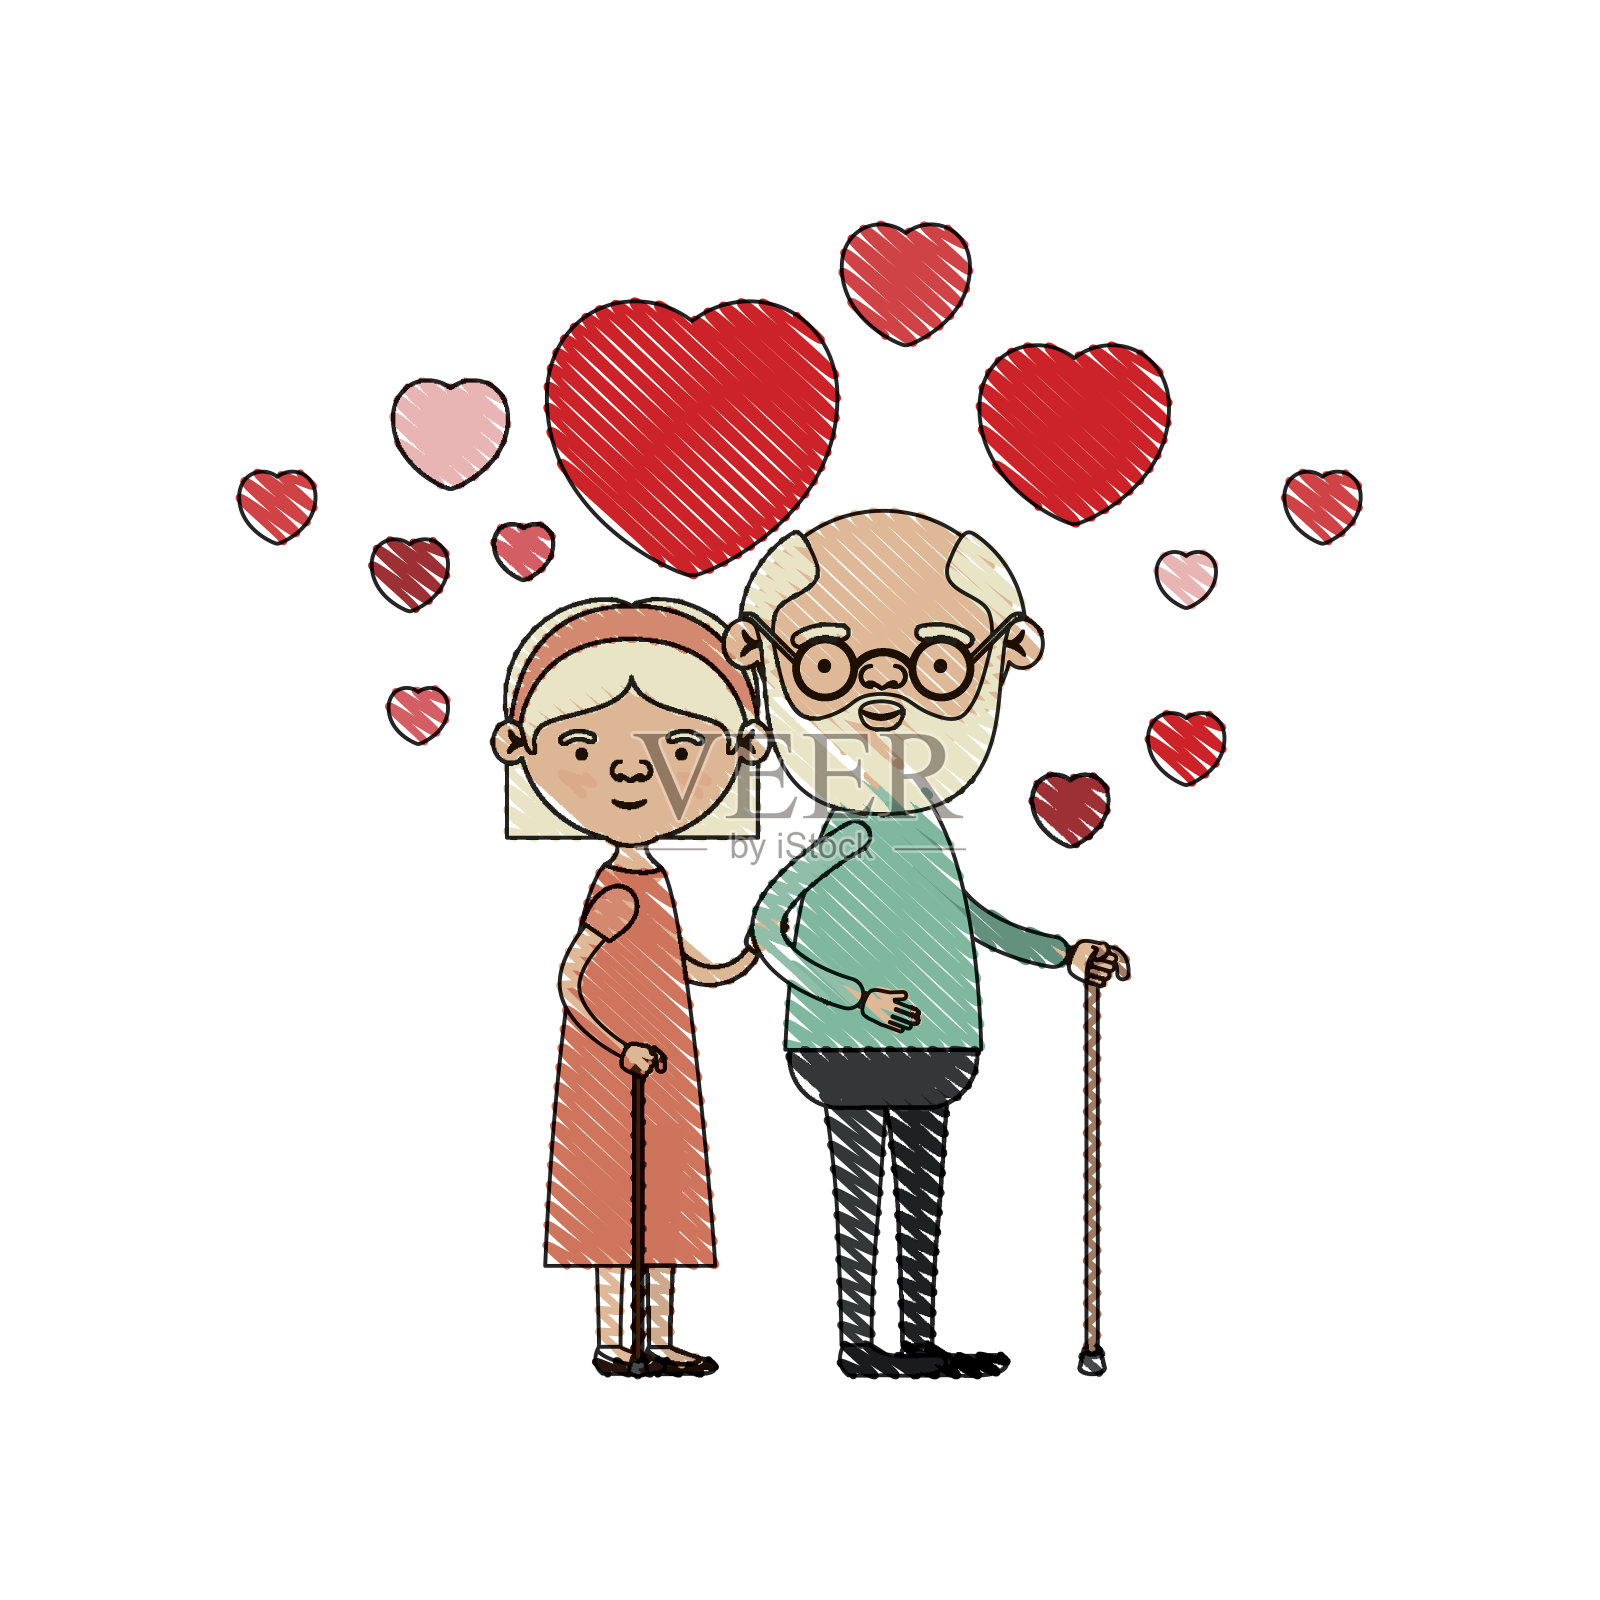 彩色蜡笔剪影漫画全身老人夫妇拥抱与浮动的心在拐杖爷爷和祖母与蝴蝶结花边和短发插画图片素材